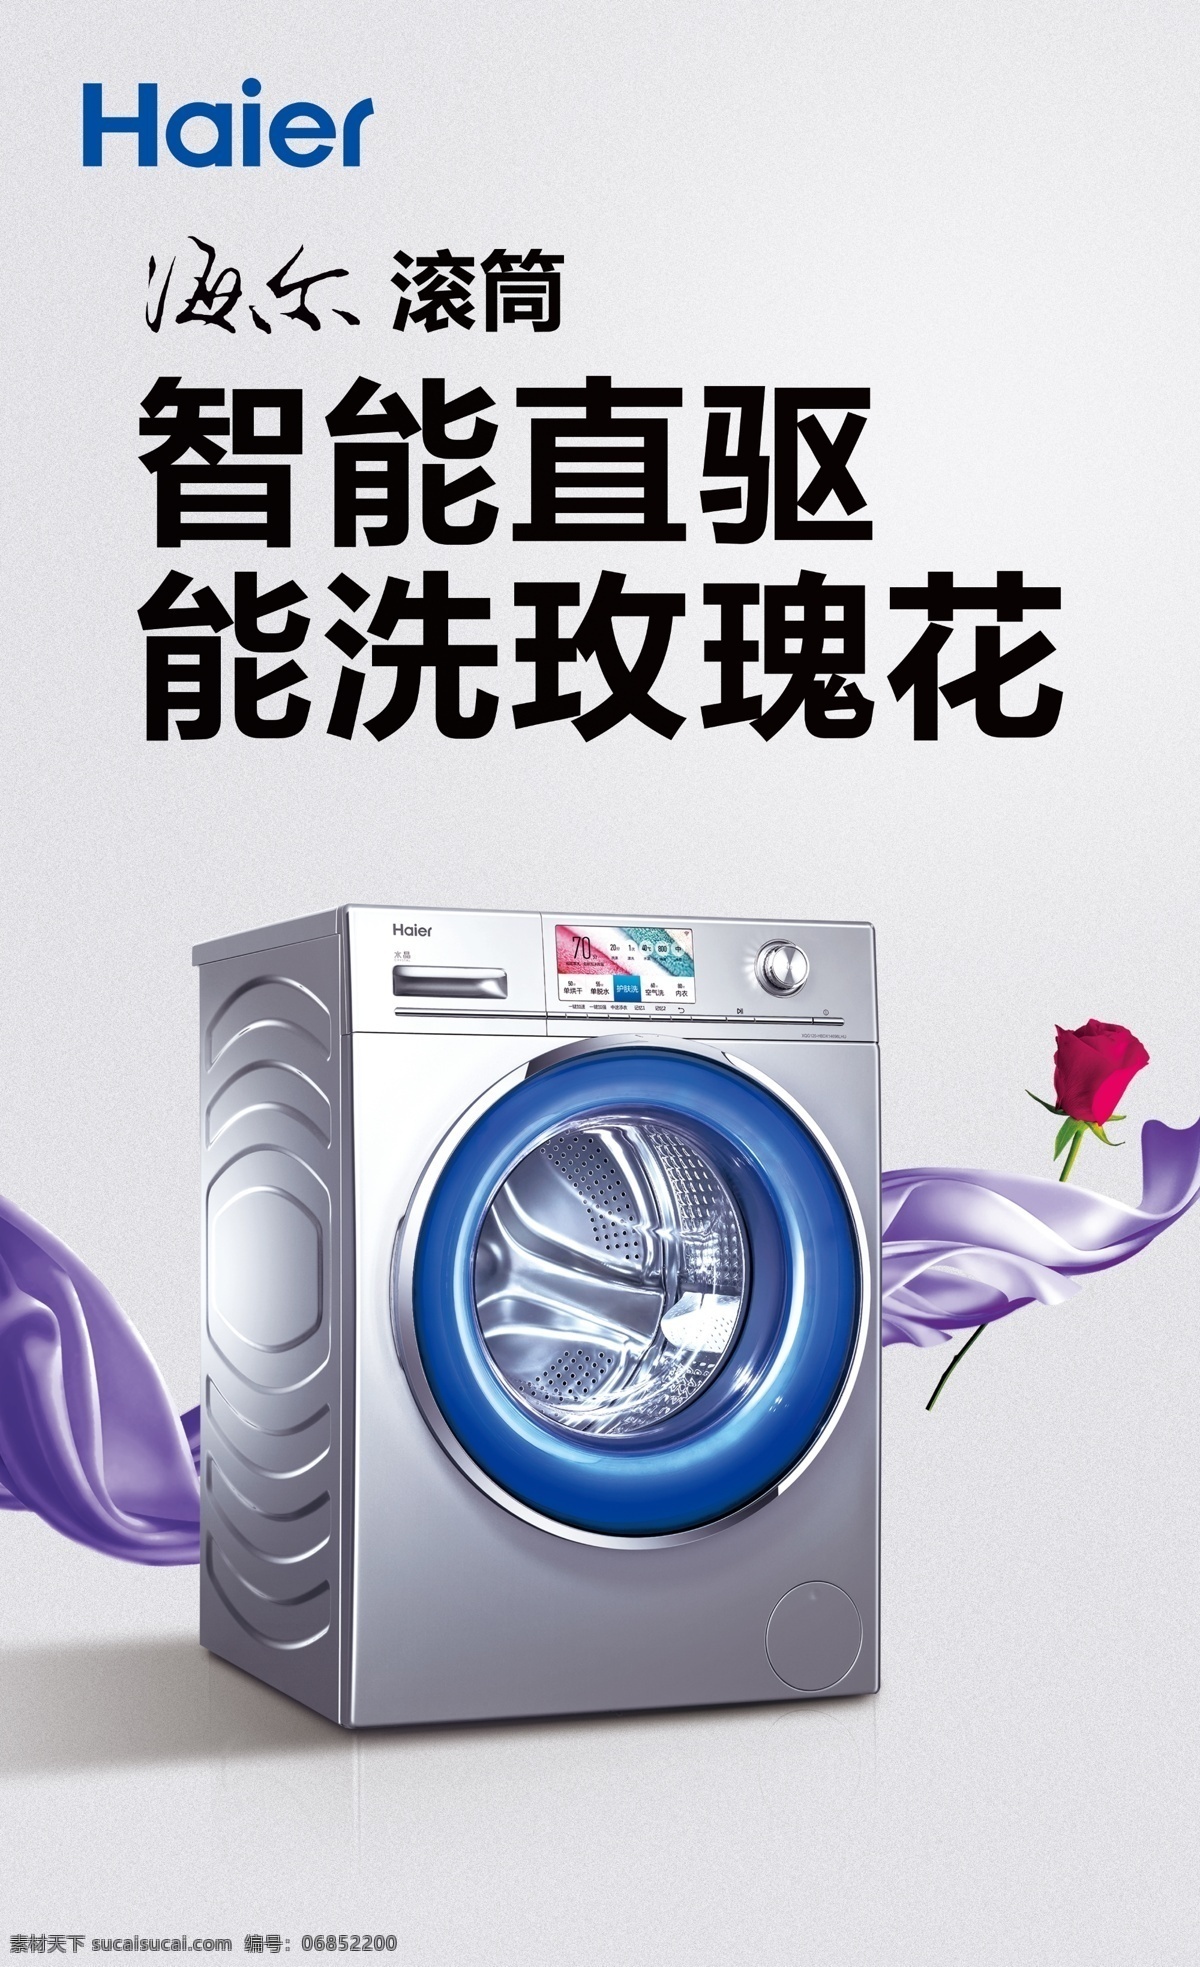 海尔 洗衣机 最新 广告 海尔洗衣机 海尔最新户外 海尔标准 海尔灯片 海尔广告